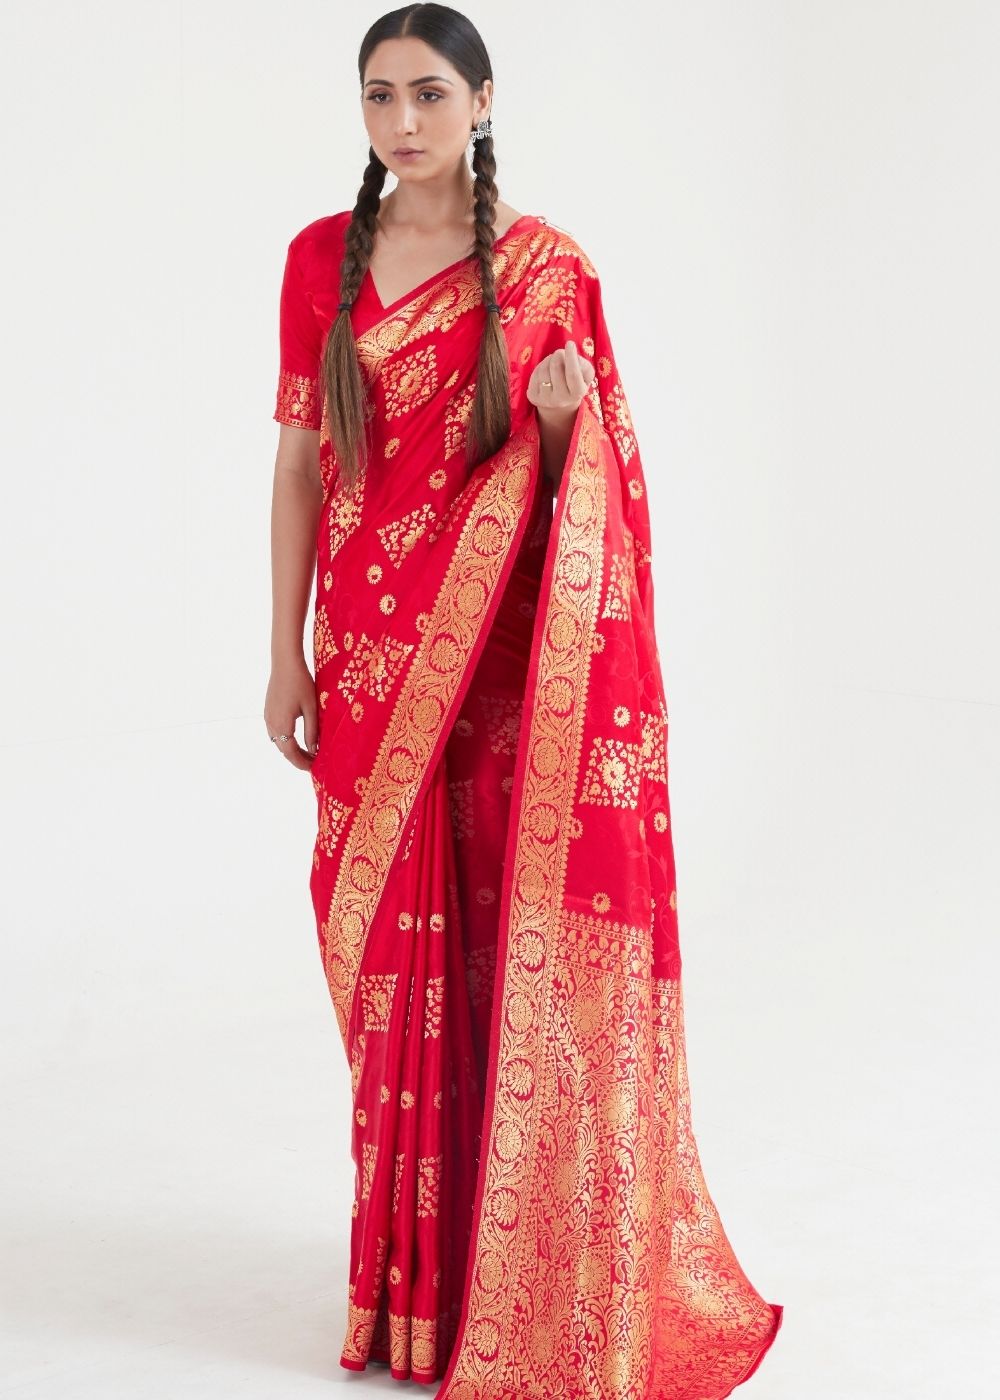 Imperial Red Zari Woven Banarasi Silk Saree - Colorful Saree